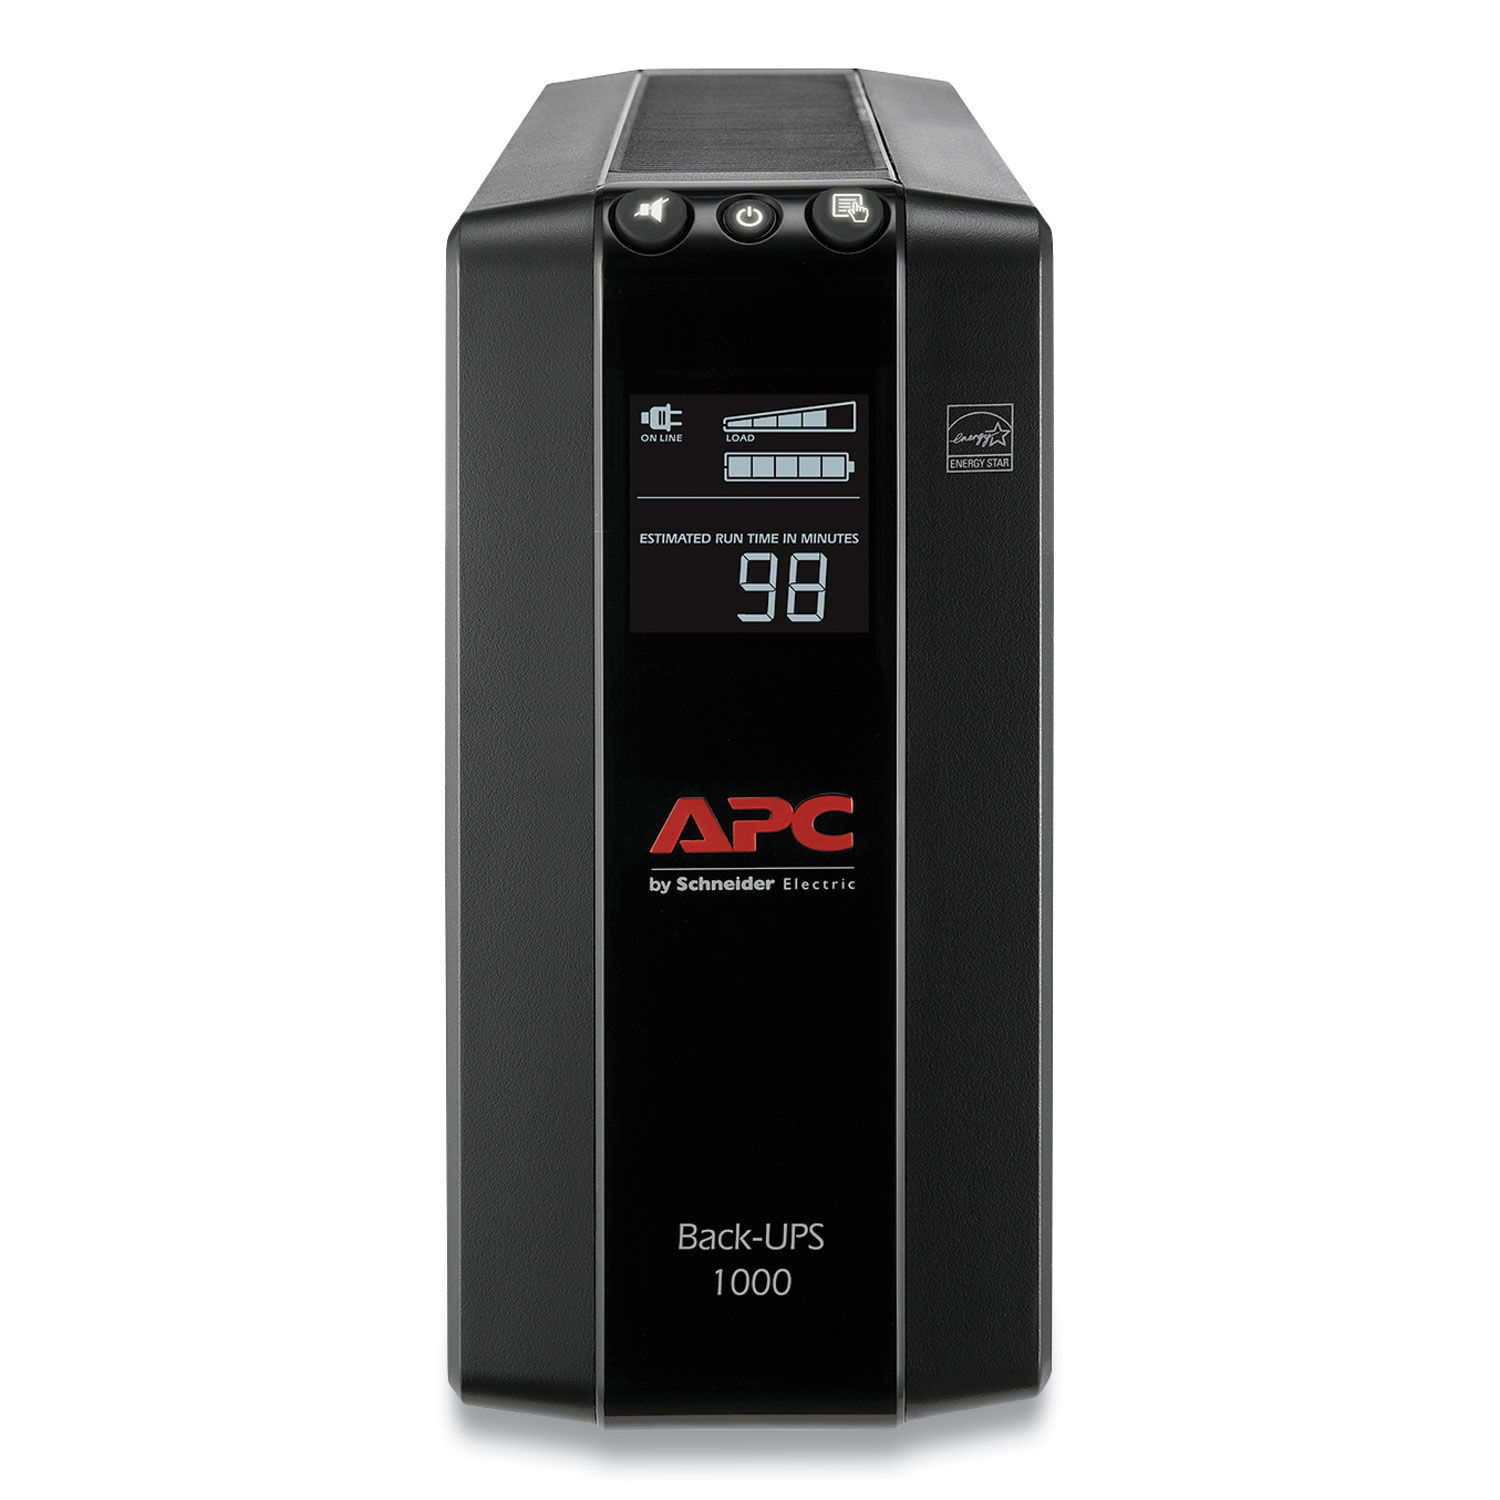 Apc ups battery. ИБП APC back-ups Pro br1600mi. APC by Schneider Electric back-ups Pro br1500gi. ИБП APC back-ups Pro 1500va. APC Battery Backup 1000/1500va.